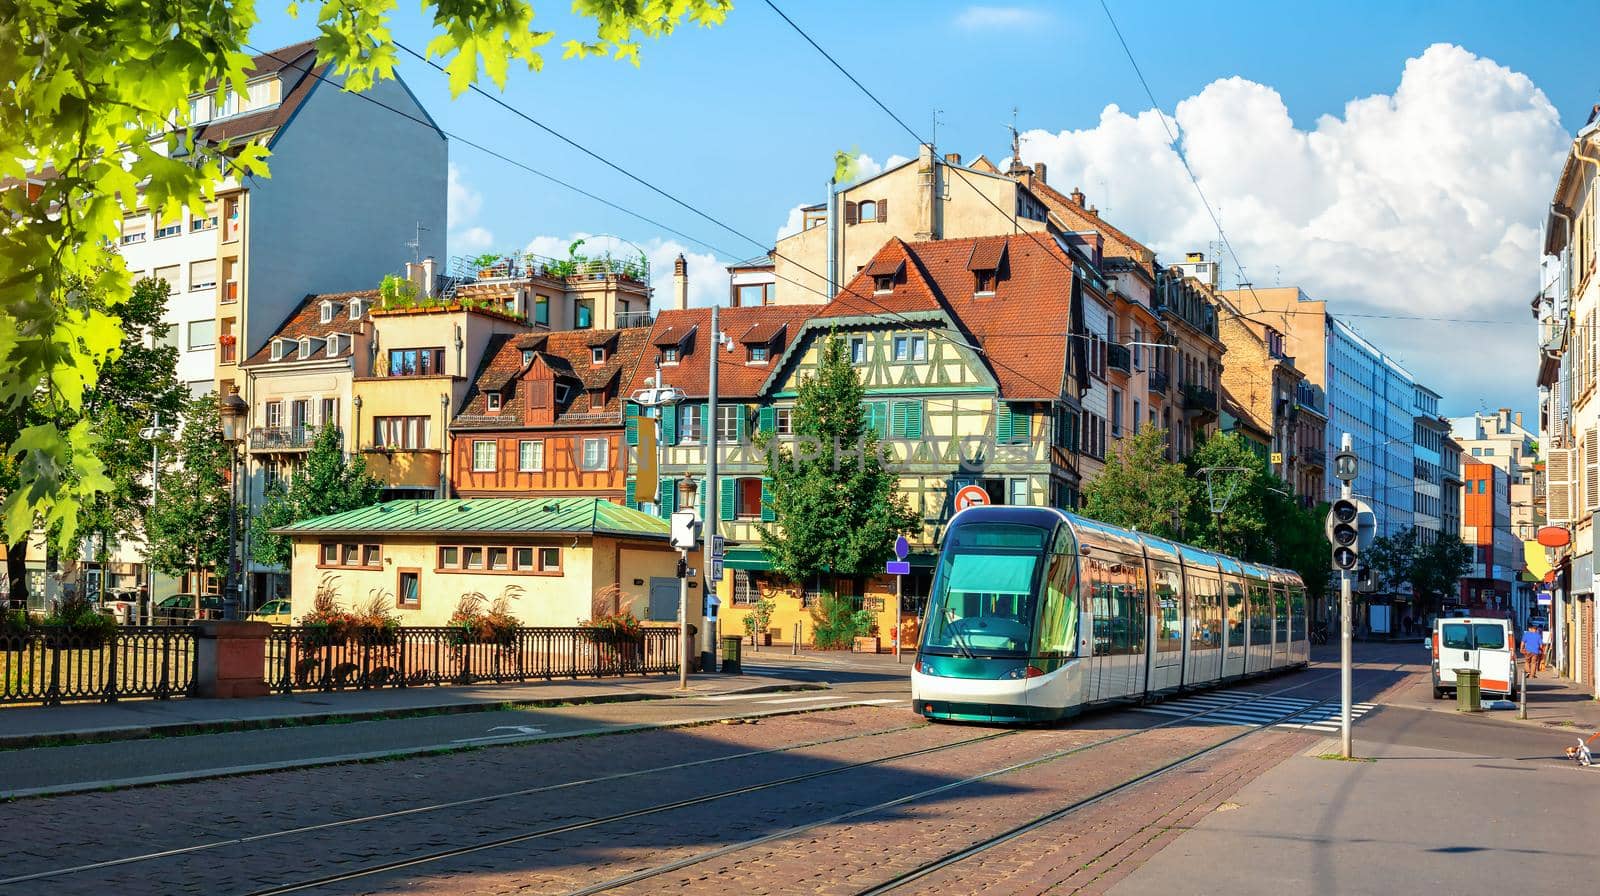 Modern tram on the street of Strasbourg, France